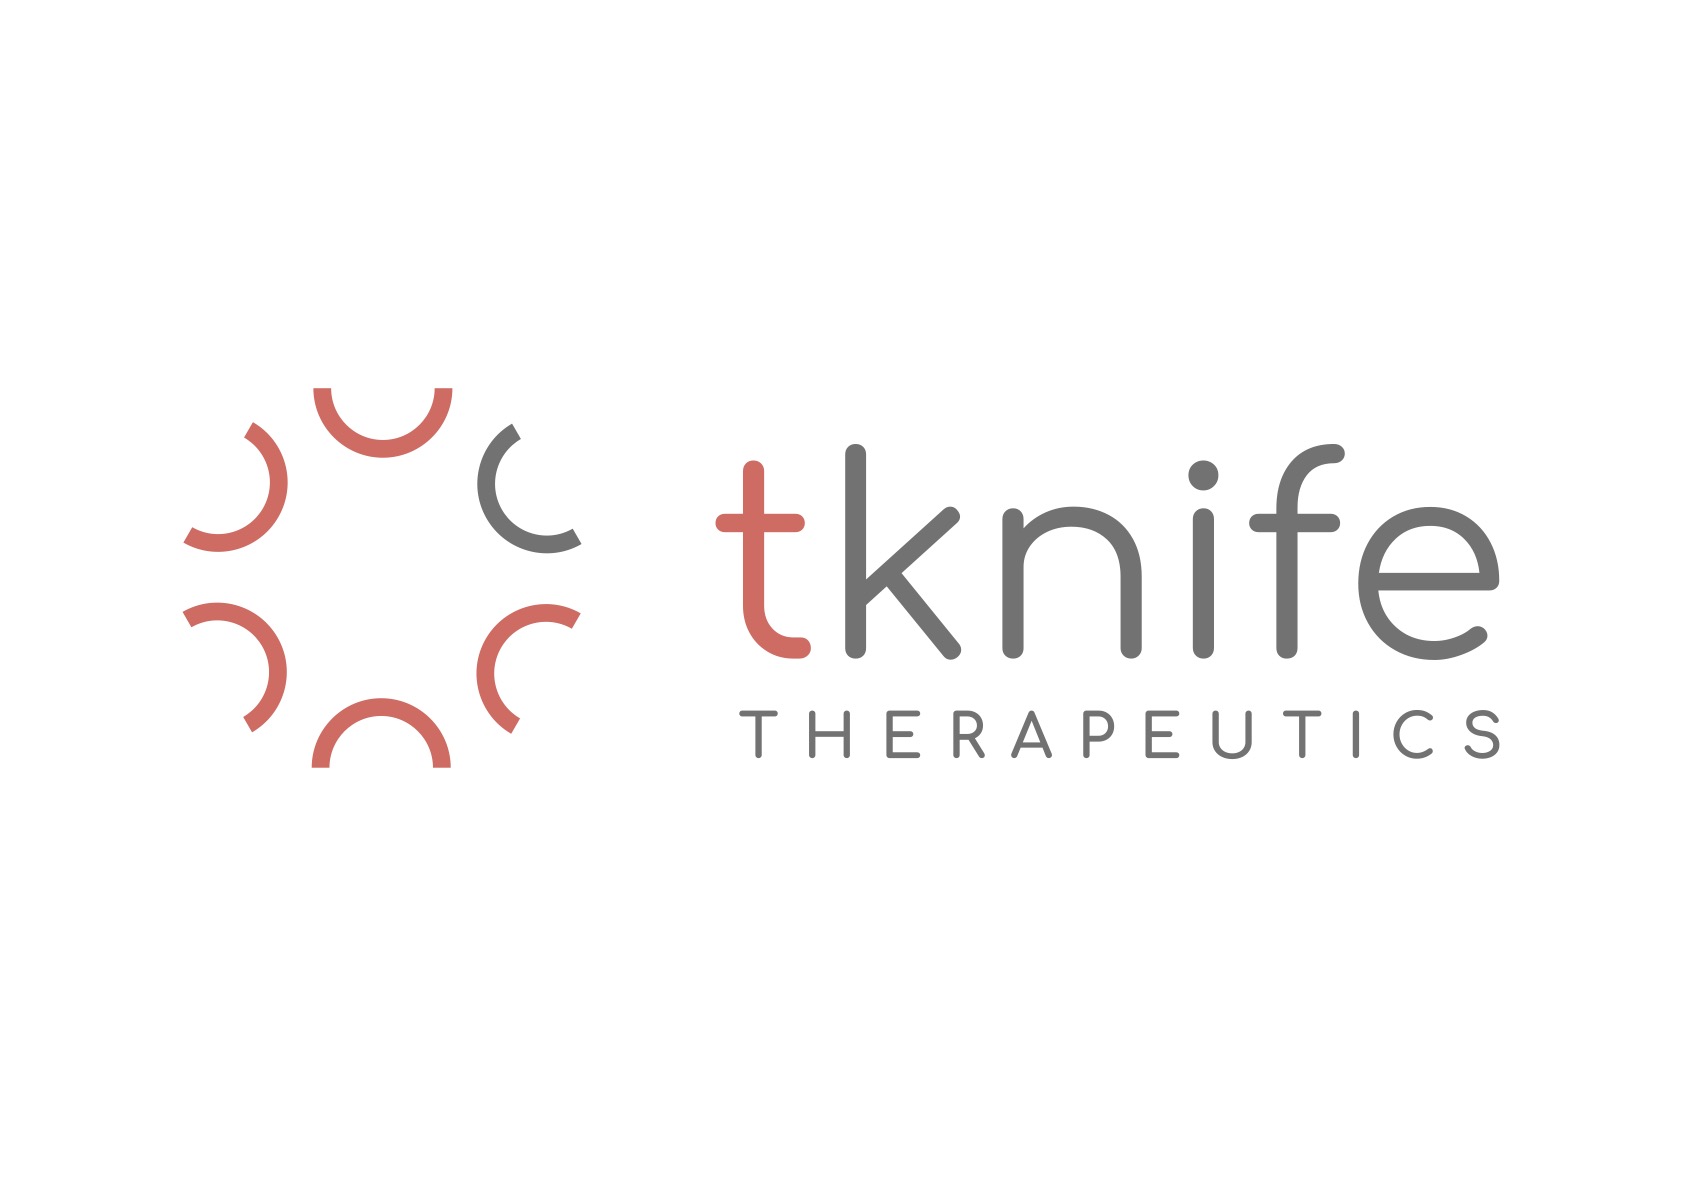 tknife_therapeutics_logo_usa.jpg